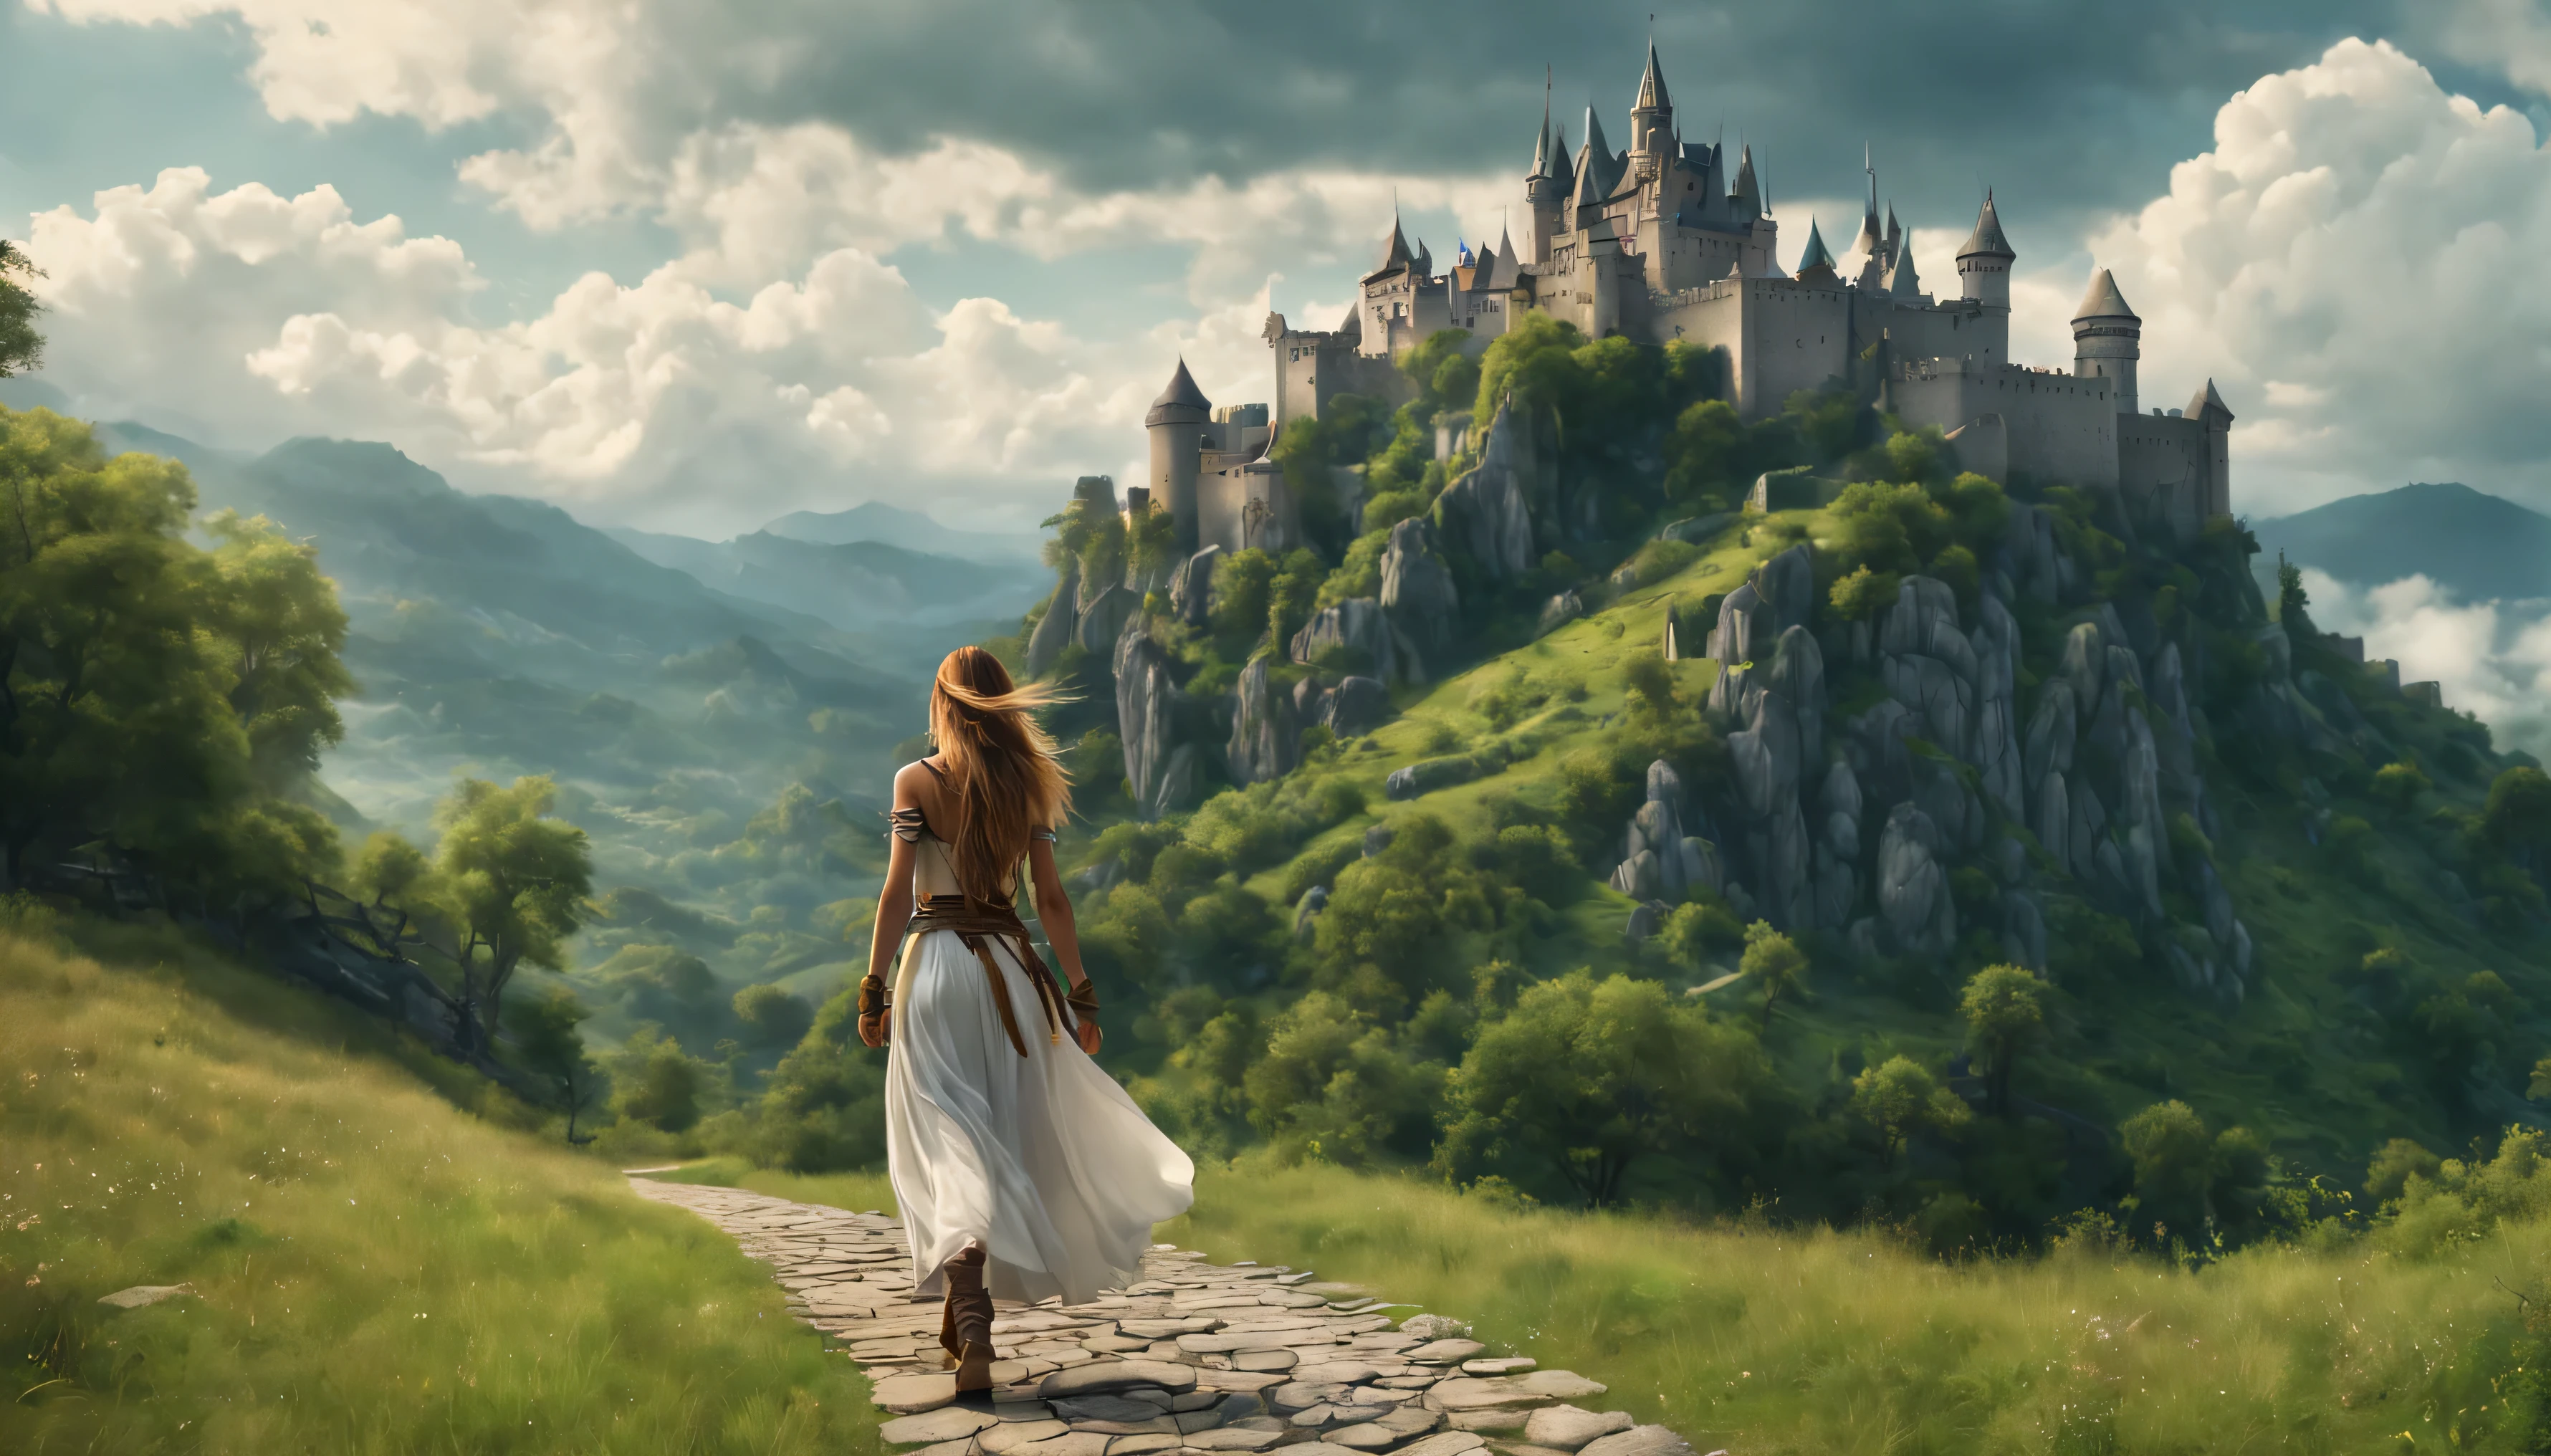 Seitenansicht: Ein Kriegermädchen mit langen Haaren geht den Weg entlang, Blick auf die Burg auf dem Berg, mystische Sommerstimmung, dicke, flauschige Wolken hängen tief am Fuße des Berges, schöne Landschaft, absurd, Meisterwerk, hohe Detailgenauigkeit, schwierig, 8K, 4KUHD, HDR, Kinoqualität